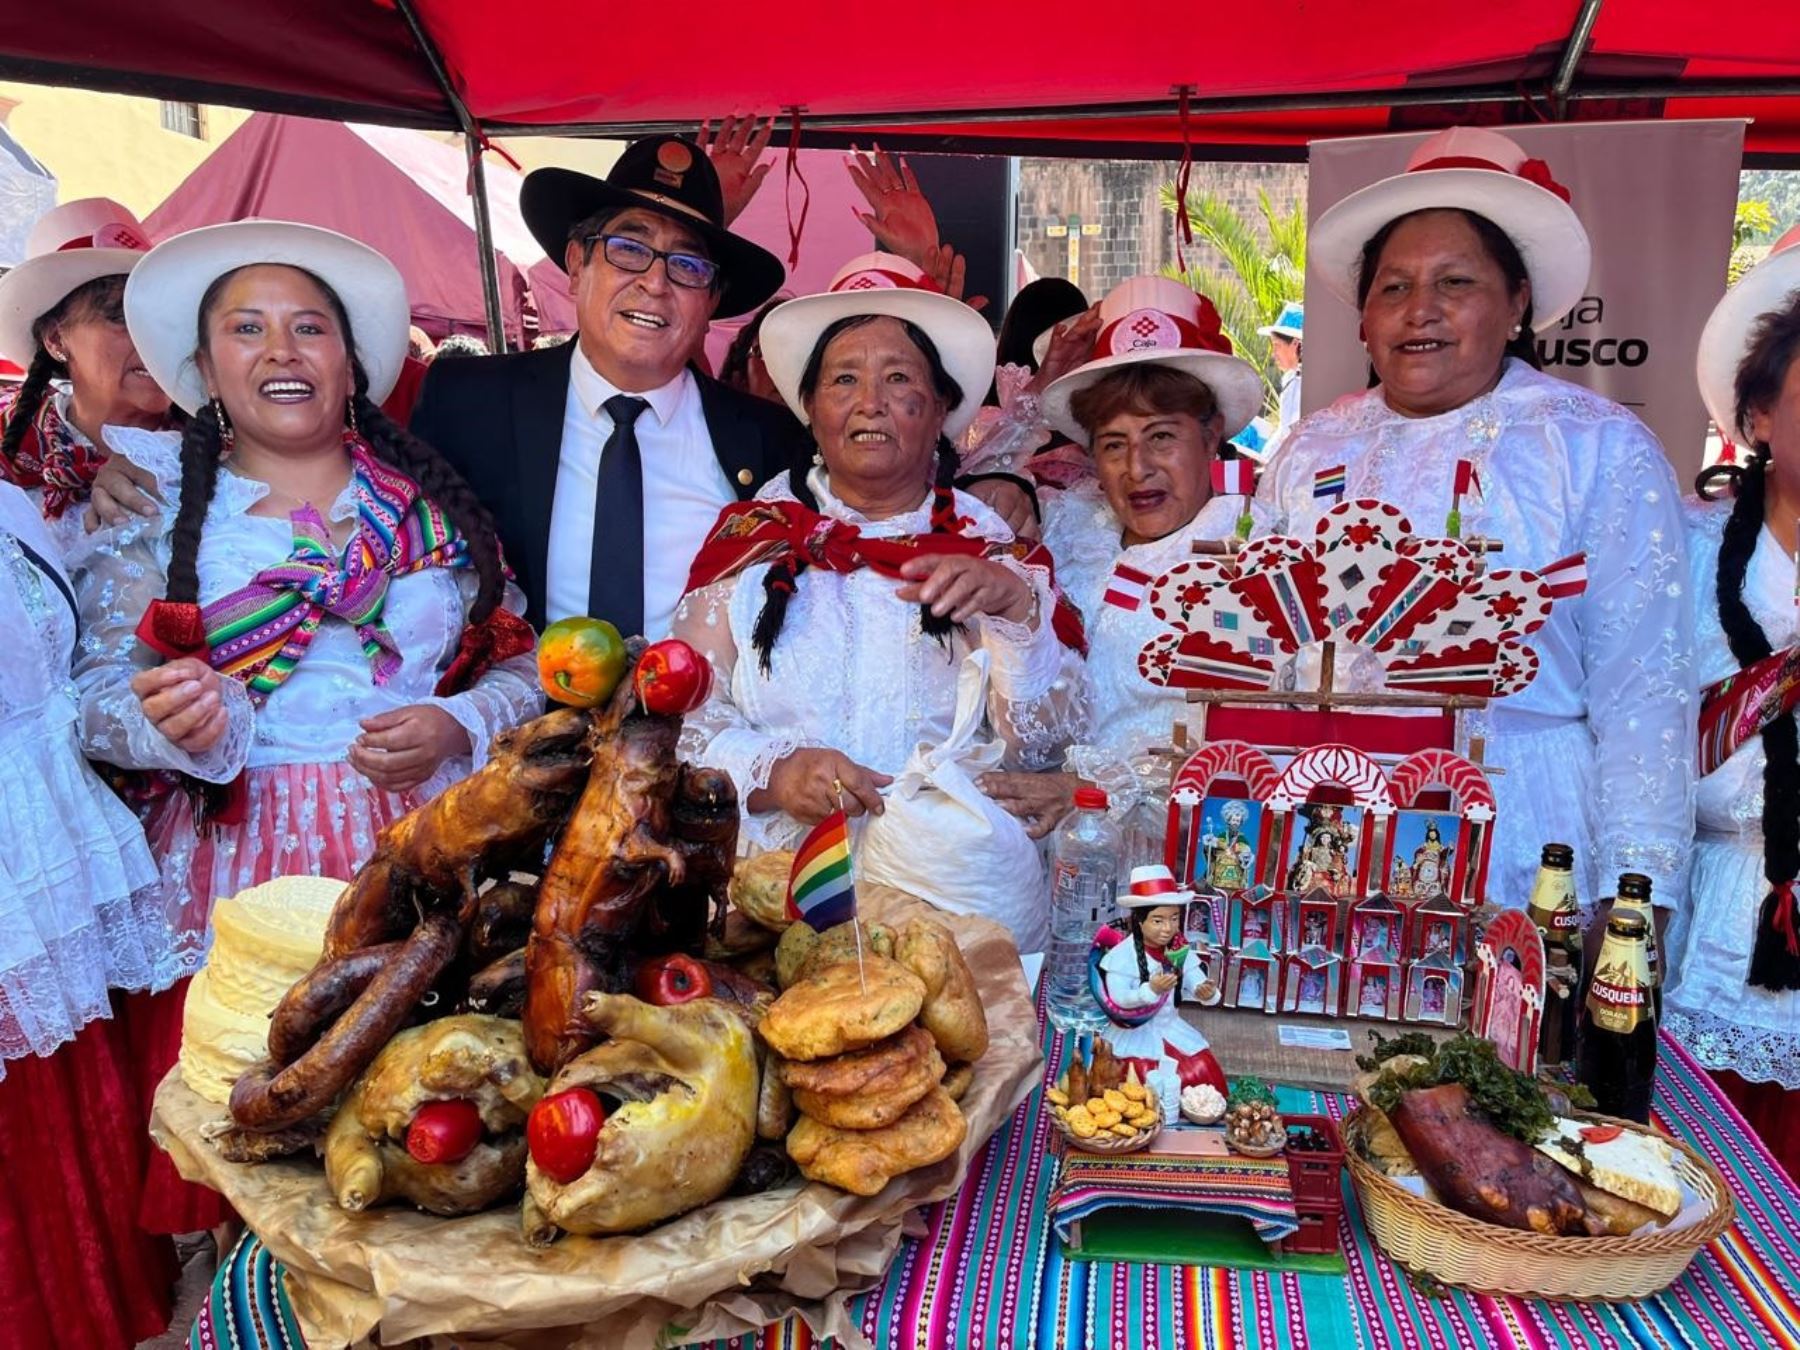 Cusco ya se prepara para el Festival del Chiriuchu que se celebrará durante el tradicional Corpus Christi. ANDINA/Percy Hurtado Santillán